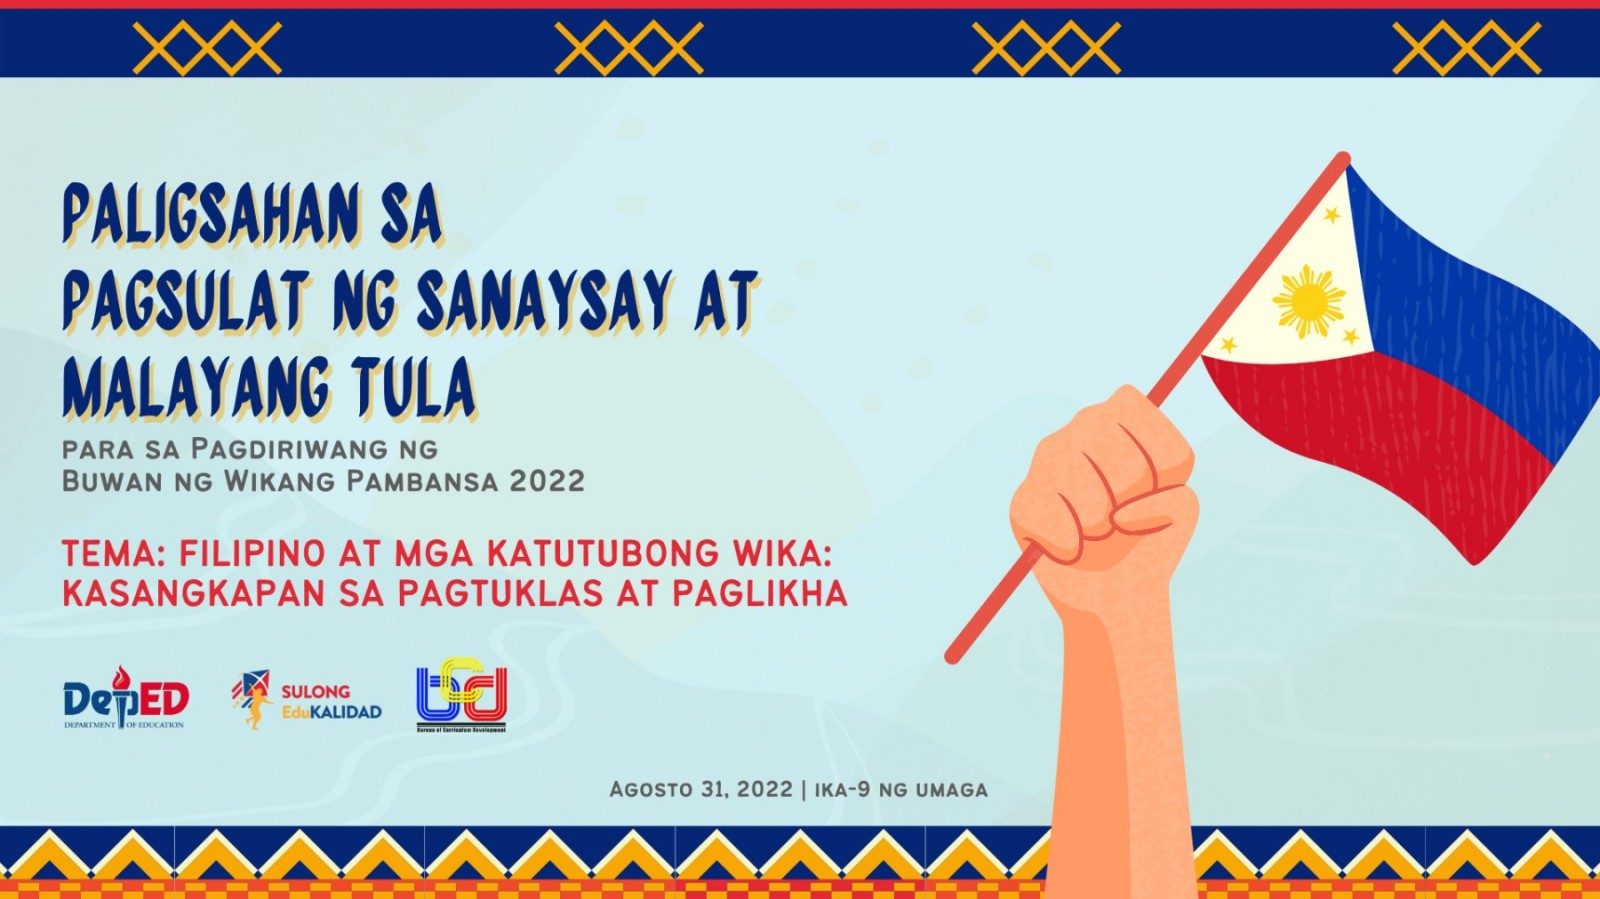 Central Luzon, Mimaropa, NCR nanguna sa patimpalak ng DepEd sa Buwan ng Wikang Pambansa 2022